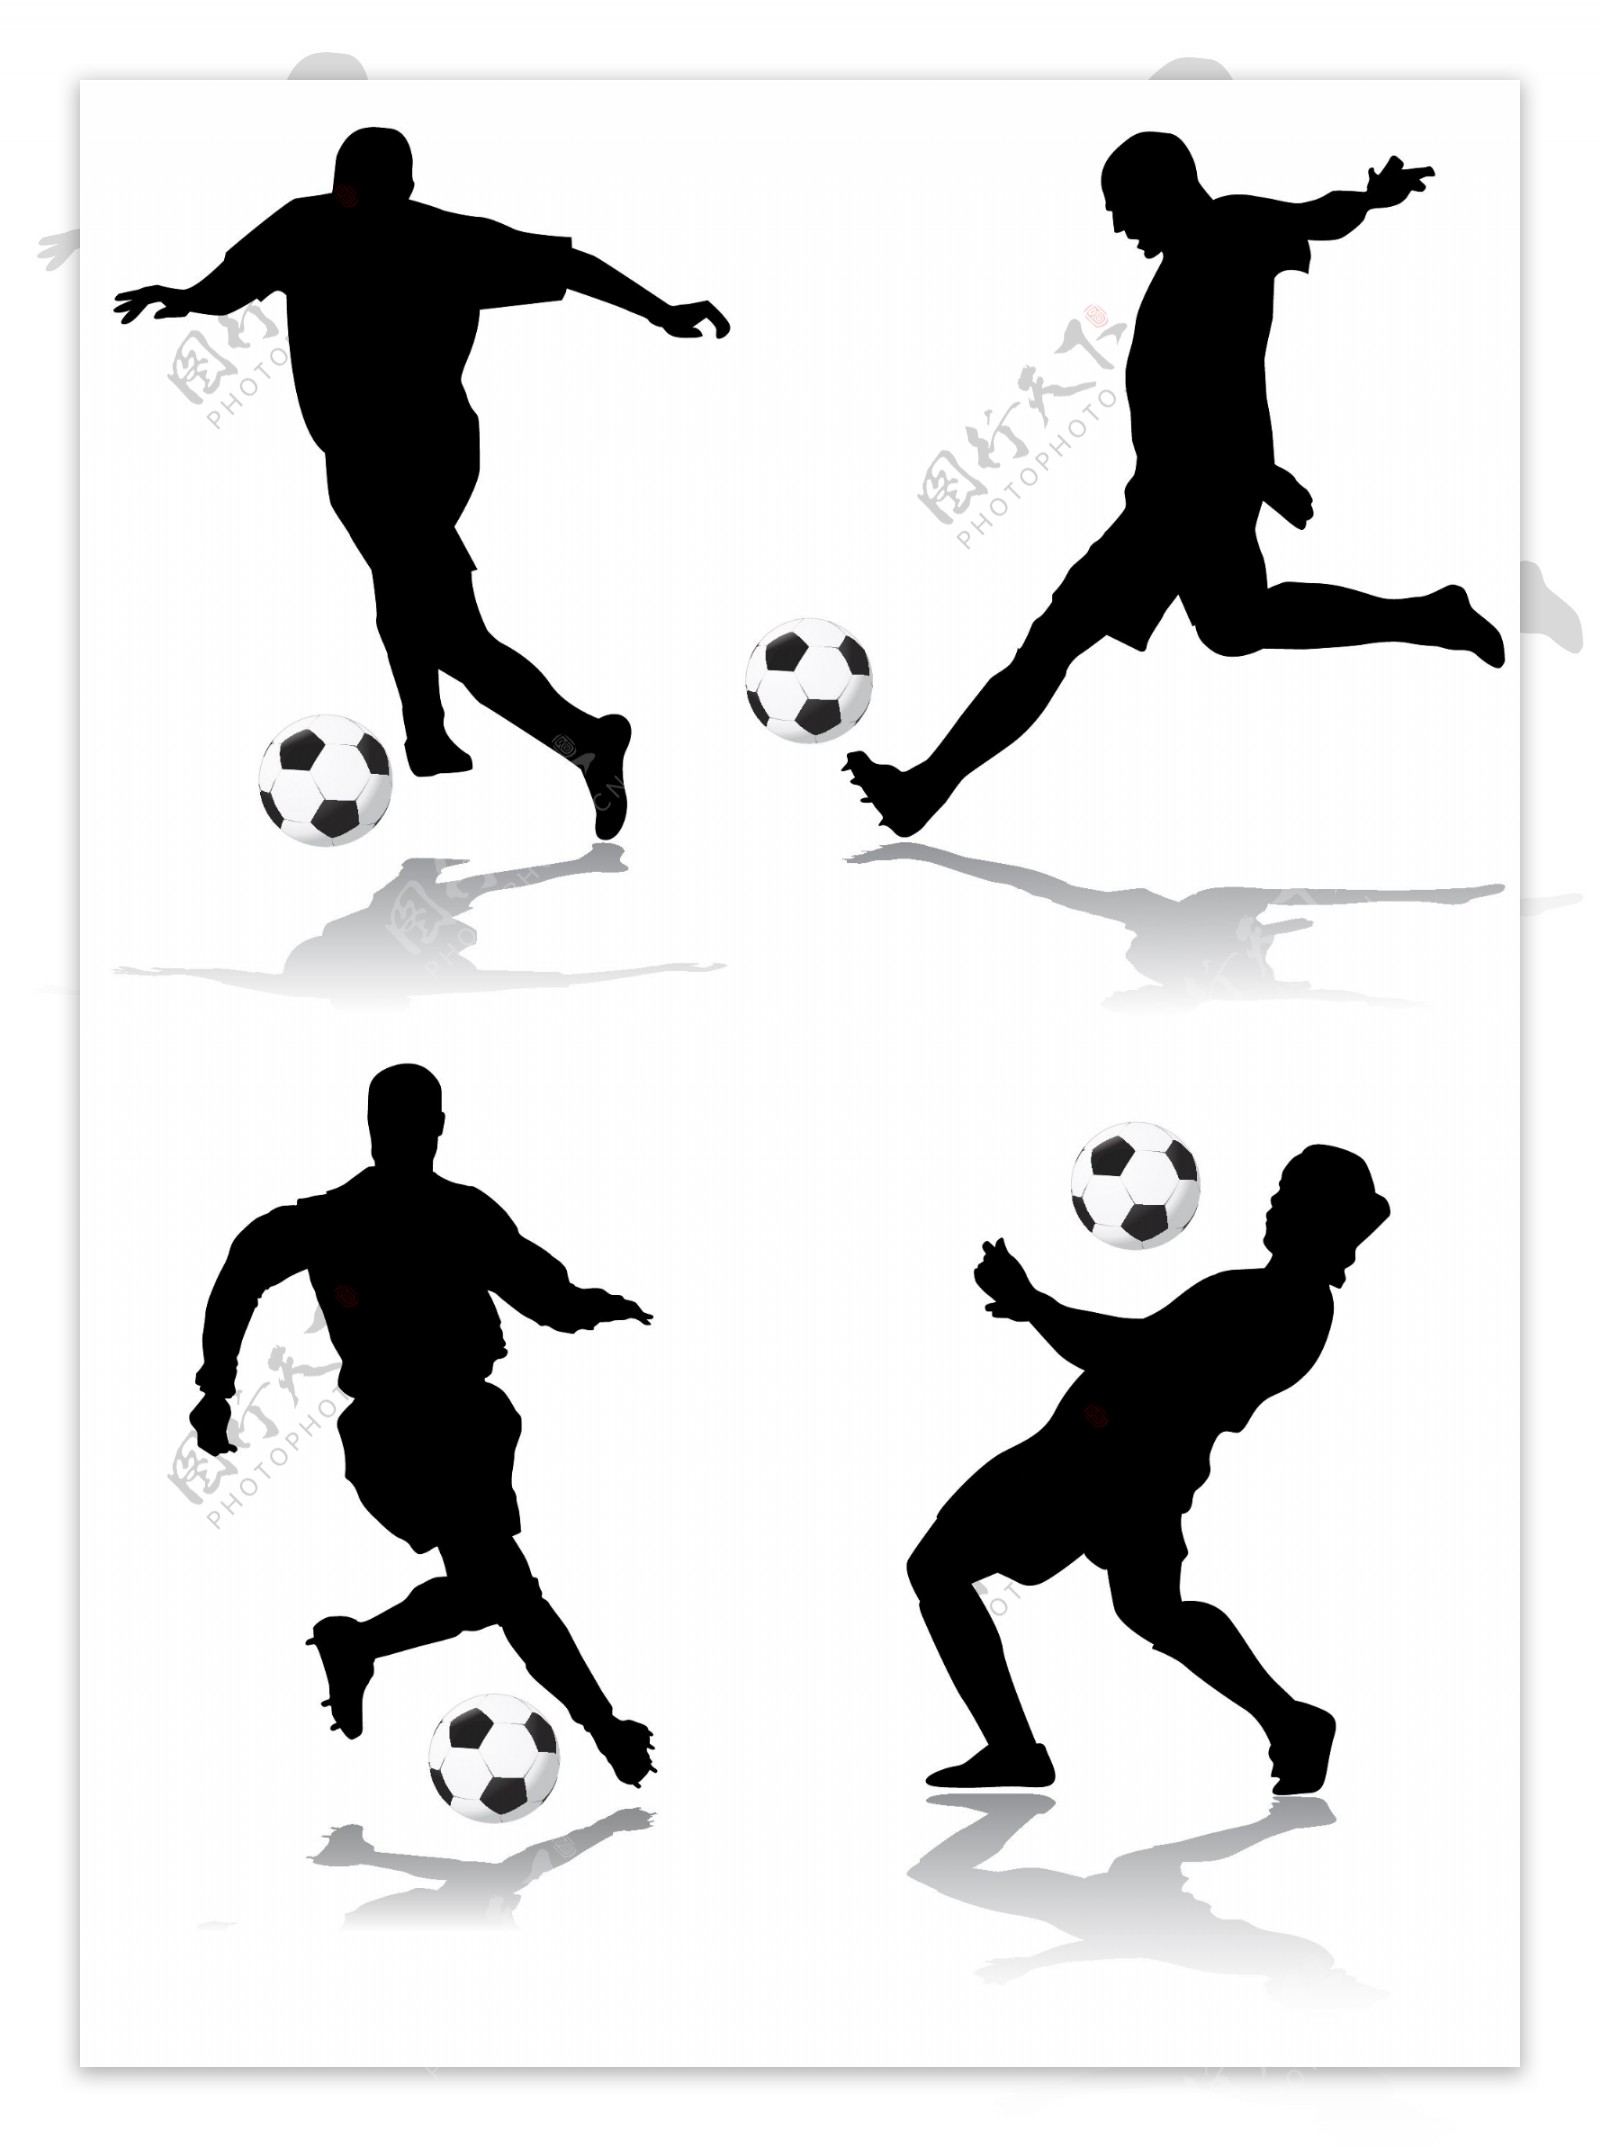 4足球人物动作剪影矢量素材